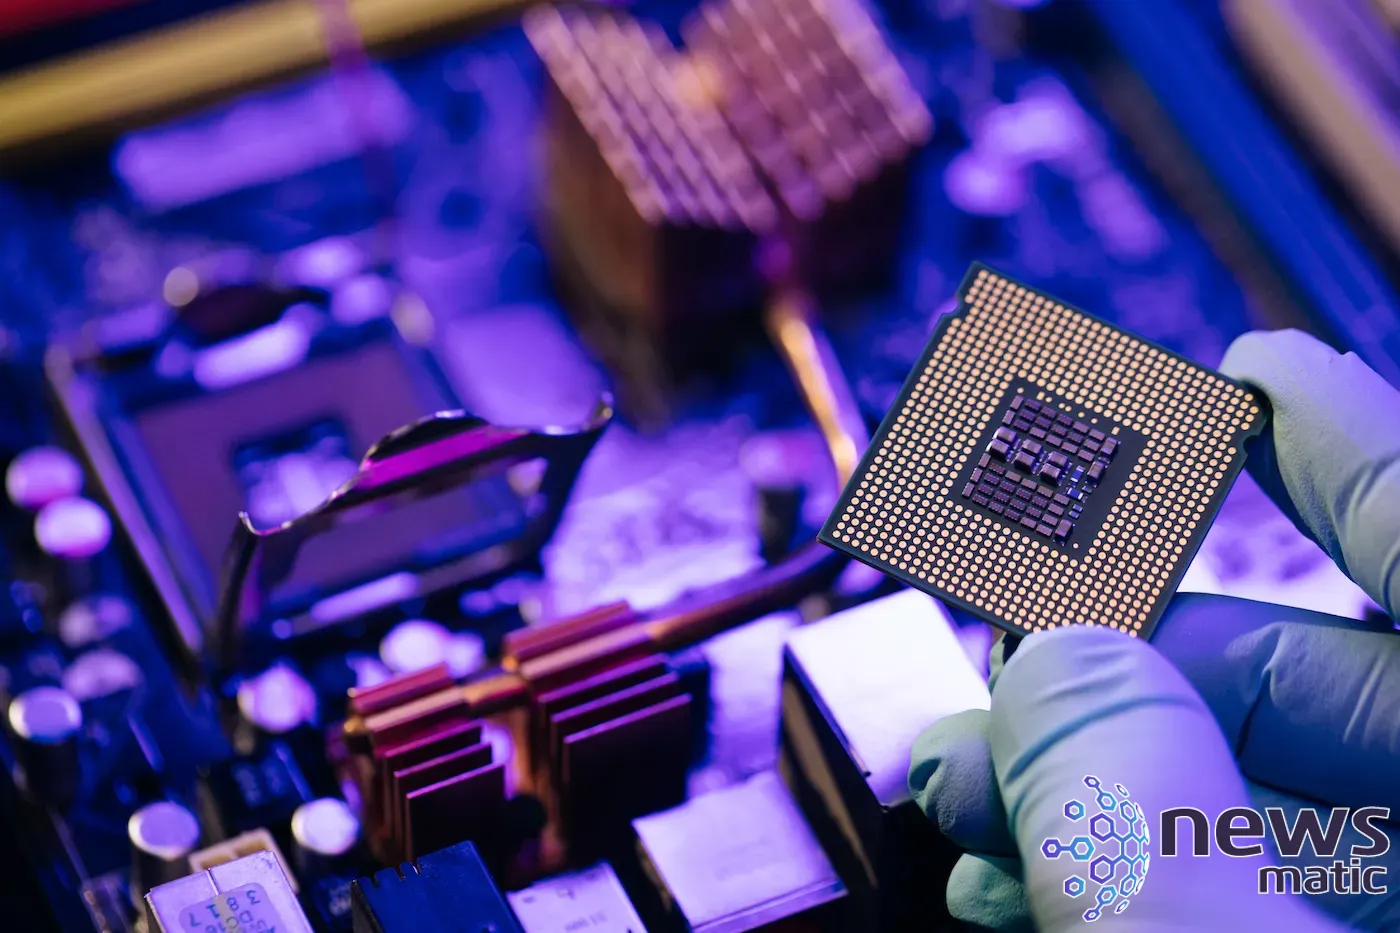 Nueva vulnerabilidad en chips Intel permite robo de datos sensibles: Downfall - Seguridad | Imagen 1 Newsmatic